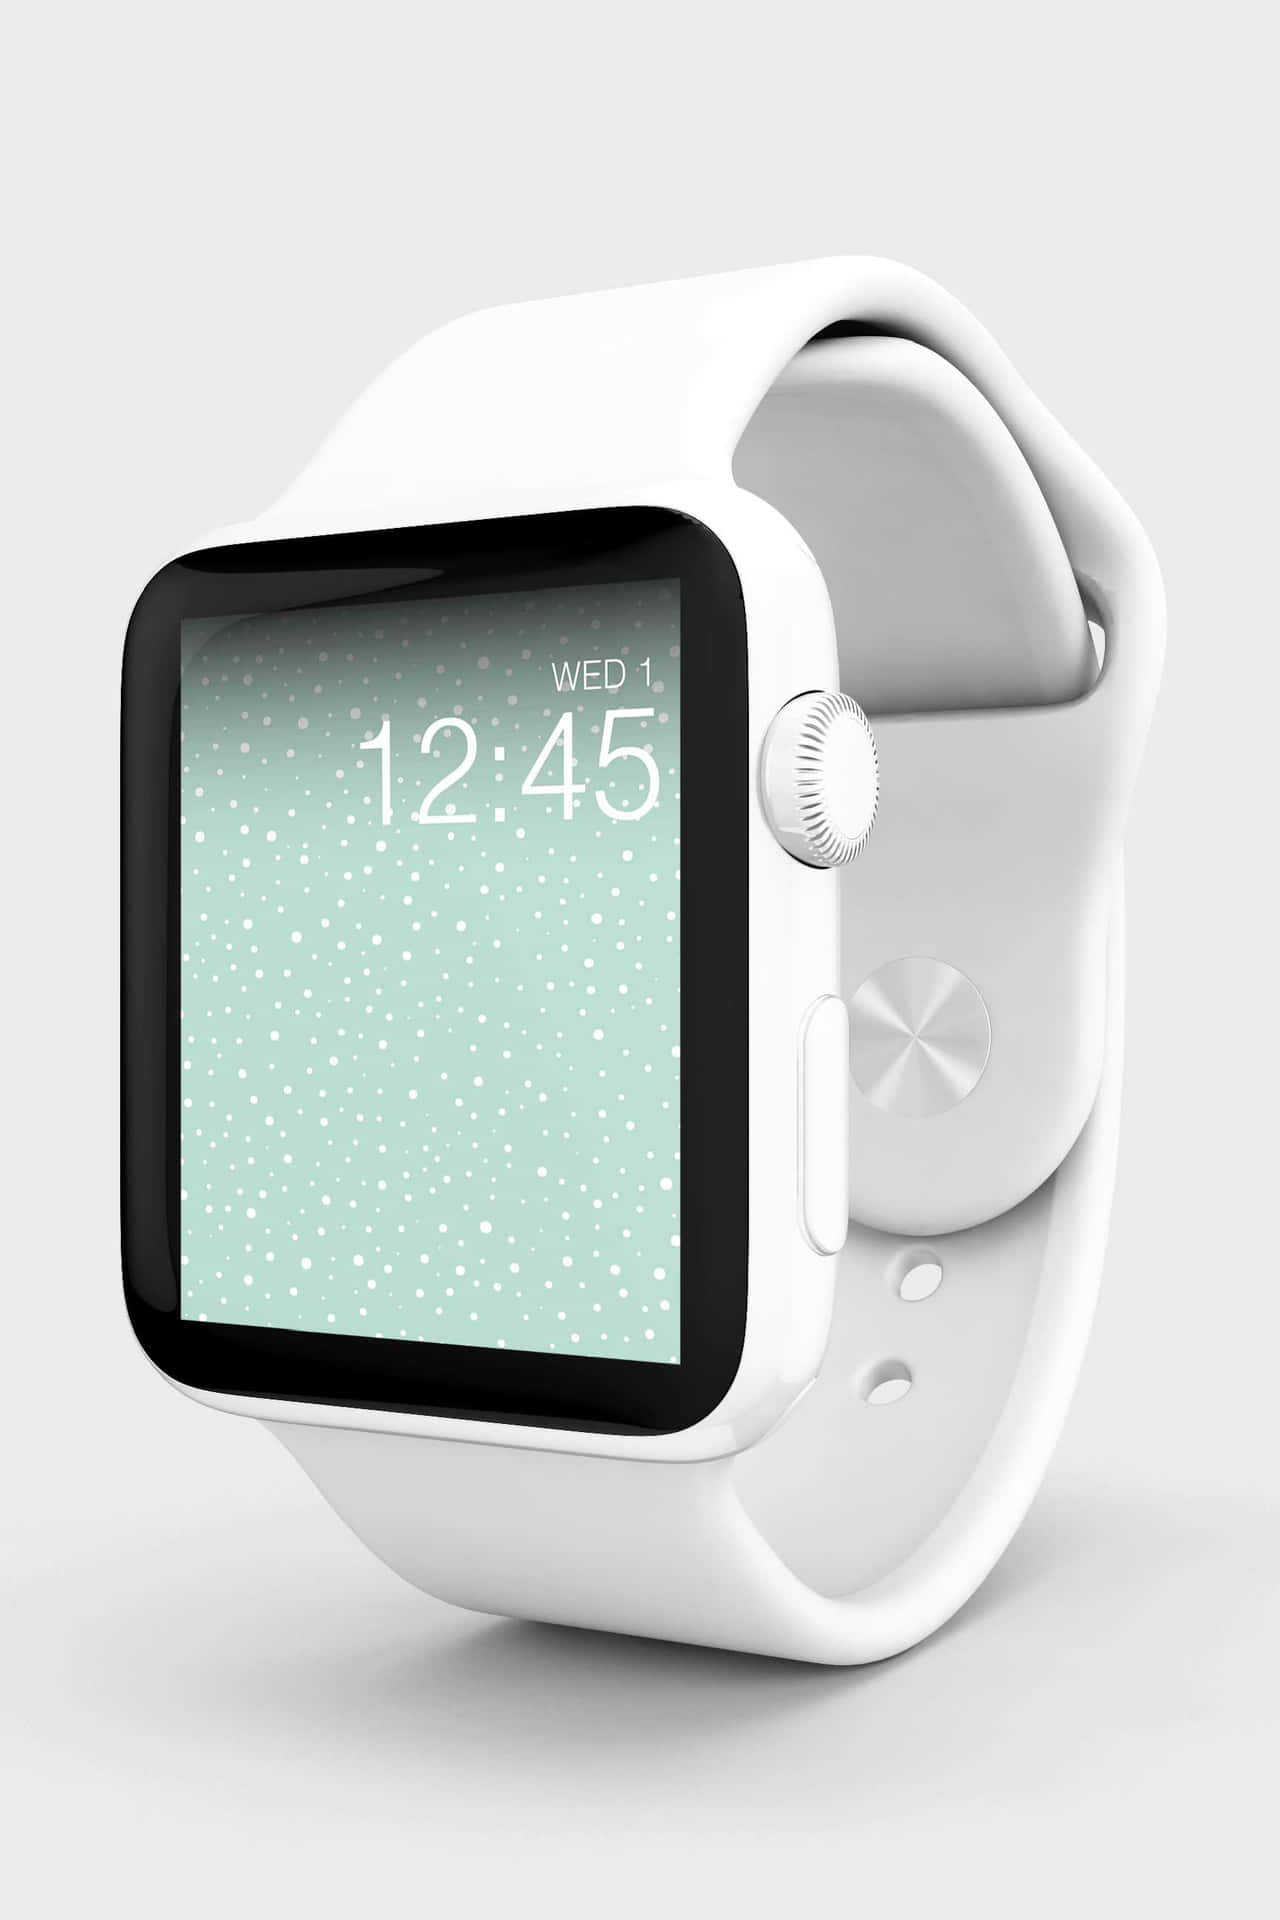 Blivklar Til At Ændre Den Måde, Du Lever På, Med Apple Watch'en.